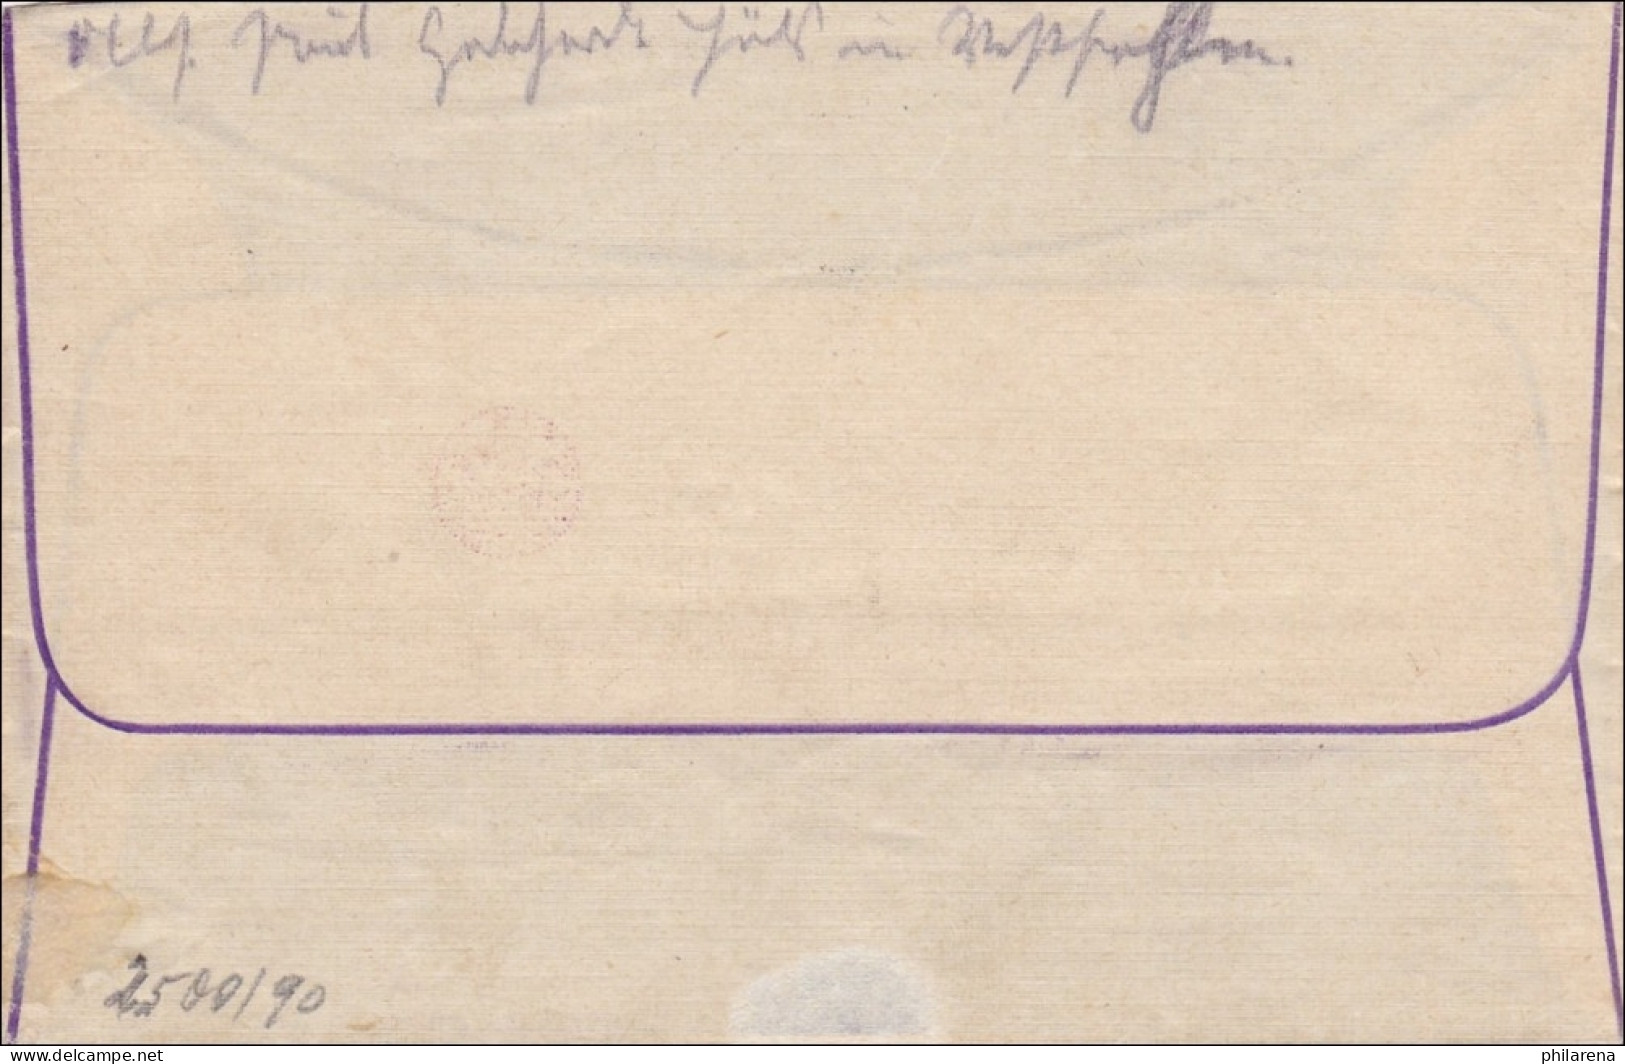 Gebühr Bezahlt: Brief Aus Auls 1923 - Brieven En Documenten